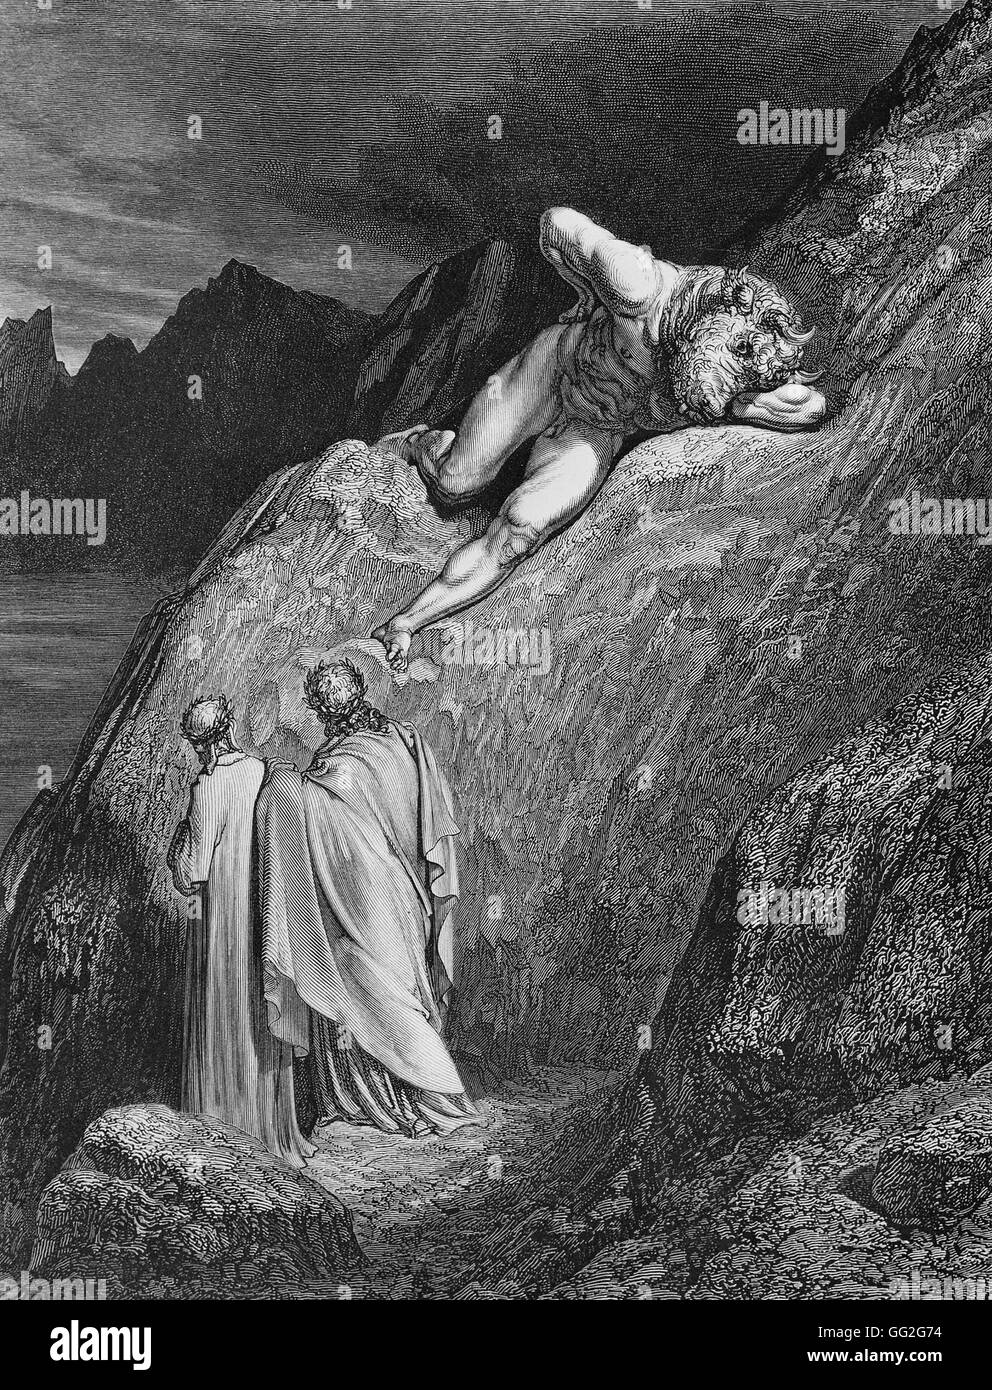 Gustave Doré école française Le Minotaure situées près de l'illustration de l'Enfer de Dante, première partie de la Divine Comédie de Dante Alighieri, gravure sur bois (24 x 19 cm) collection privée Banque D'Images